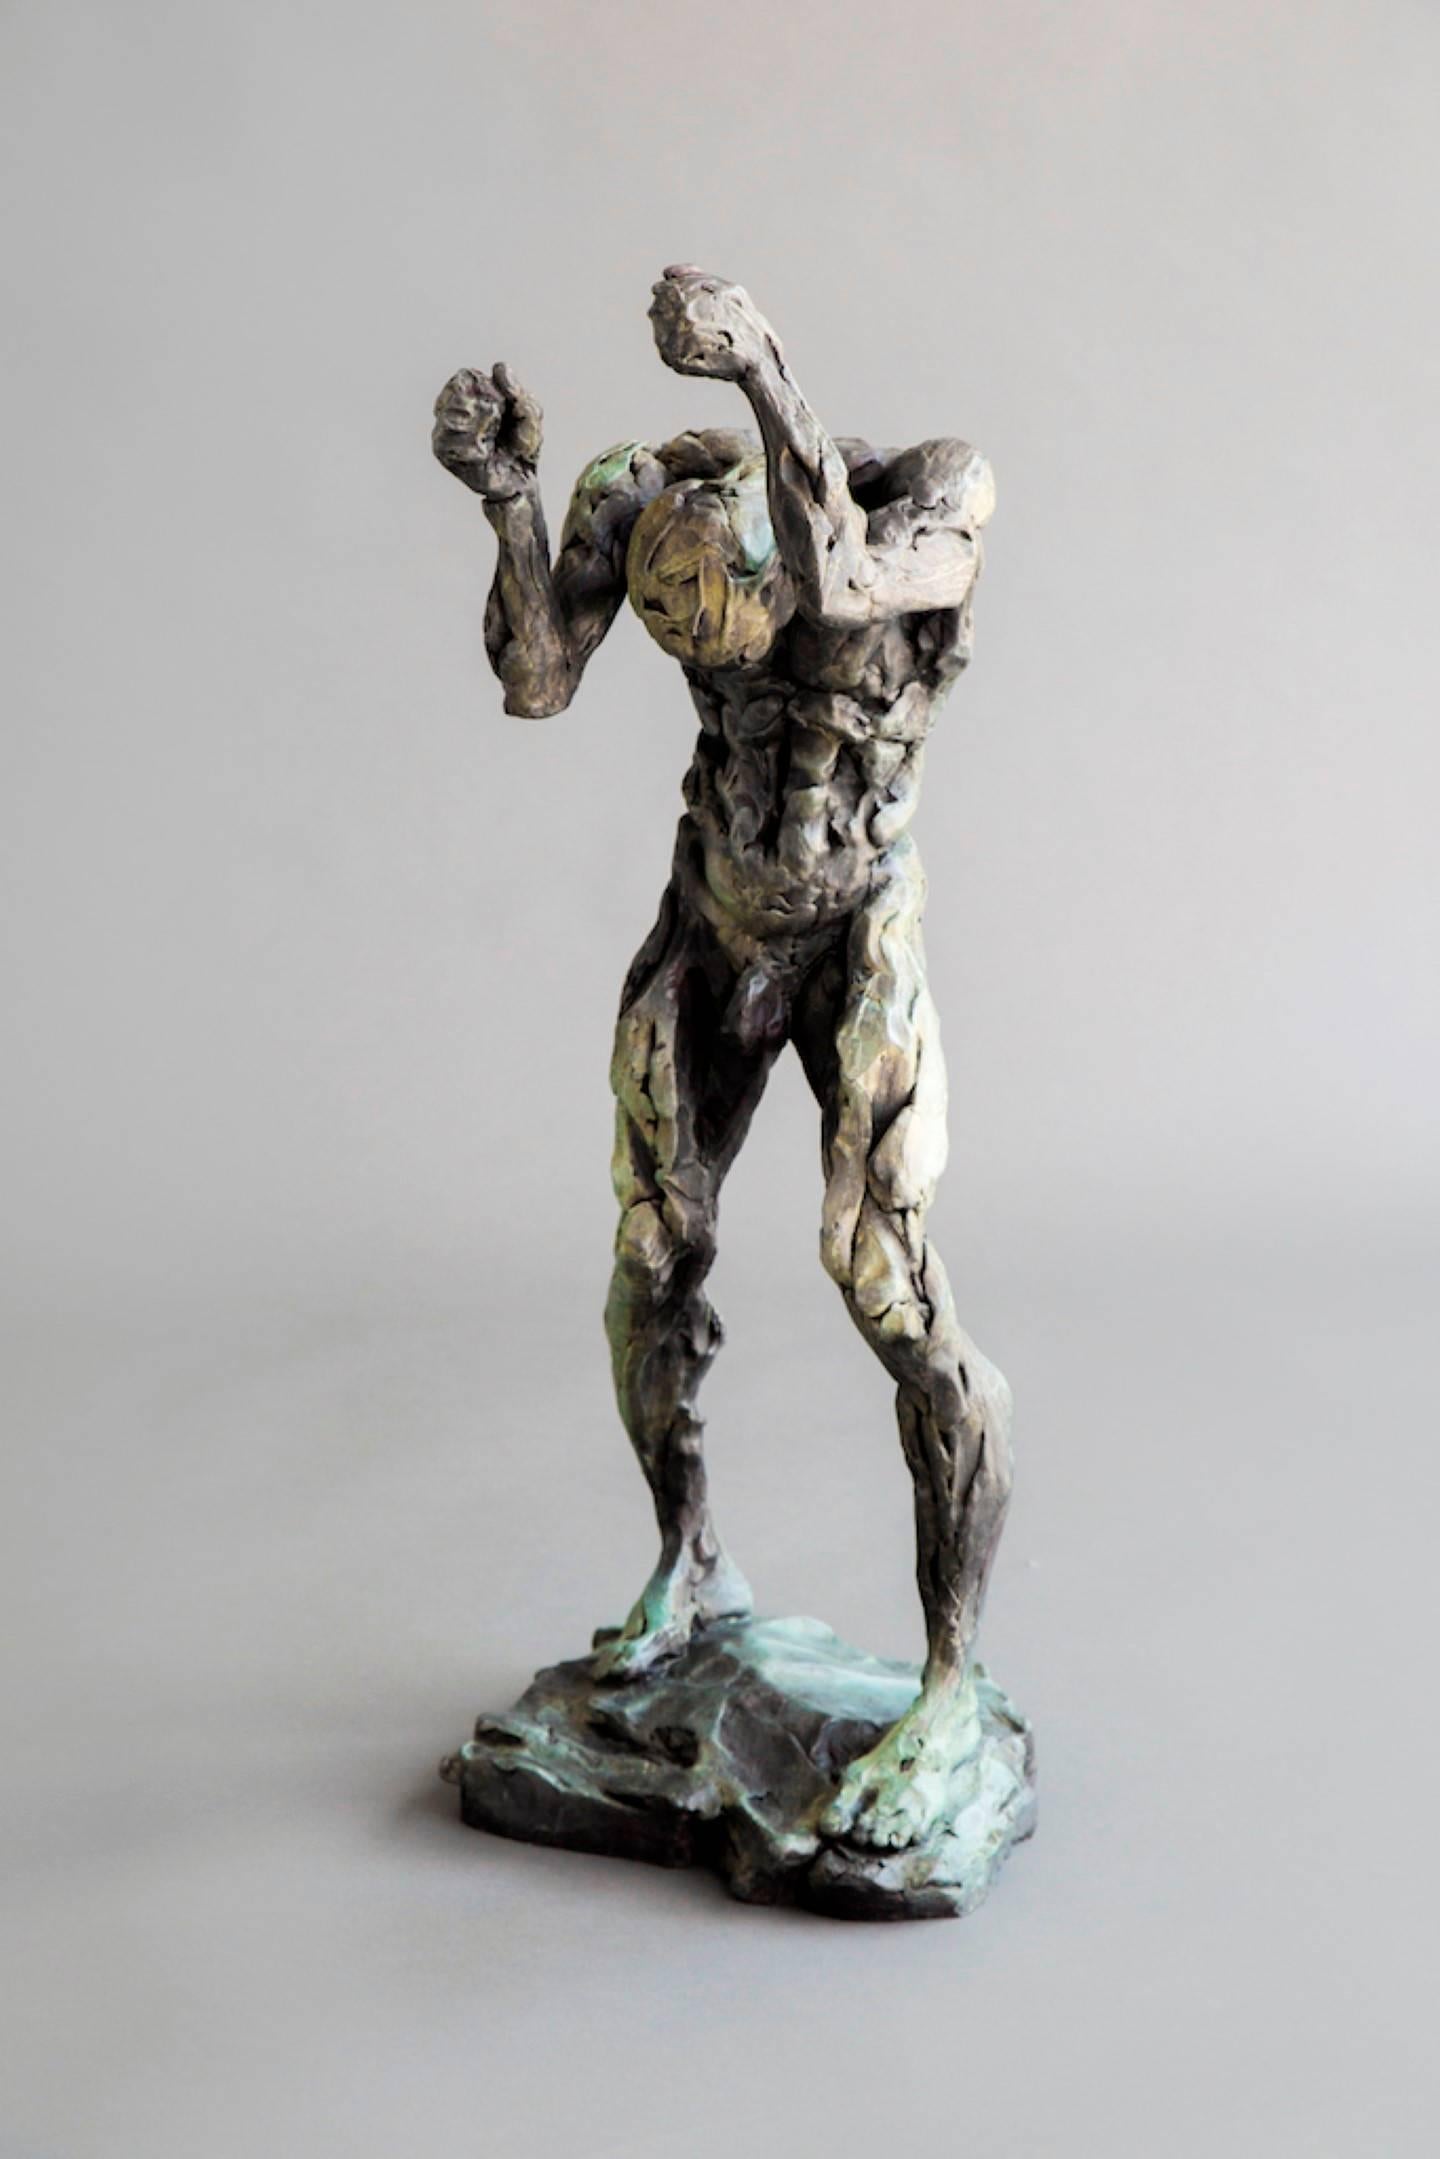 Richard Tosczak Figurative Sculpture - Orpheus after the disappearance of Eurydice - male, figurative, bronze sculpture